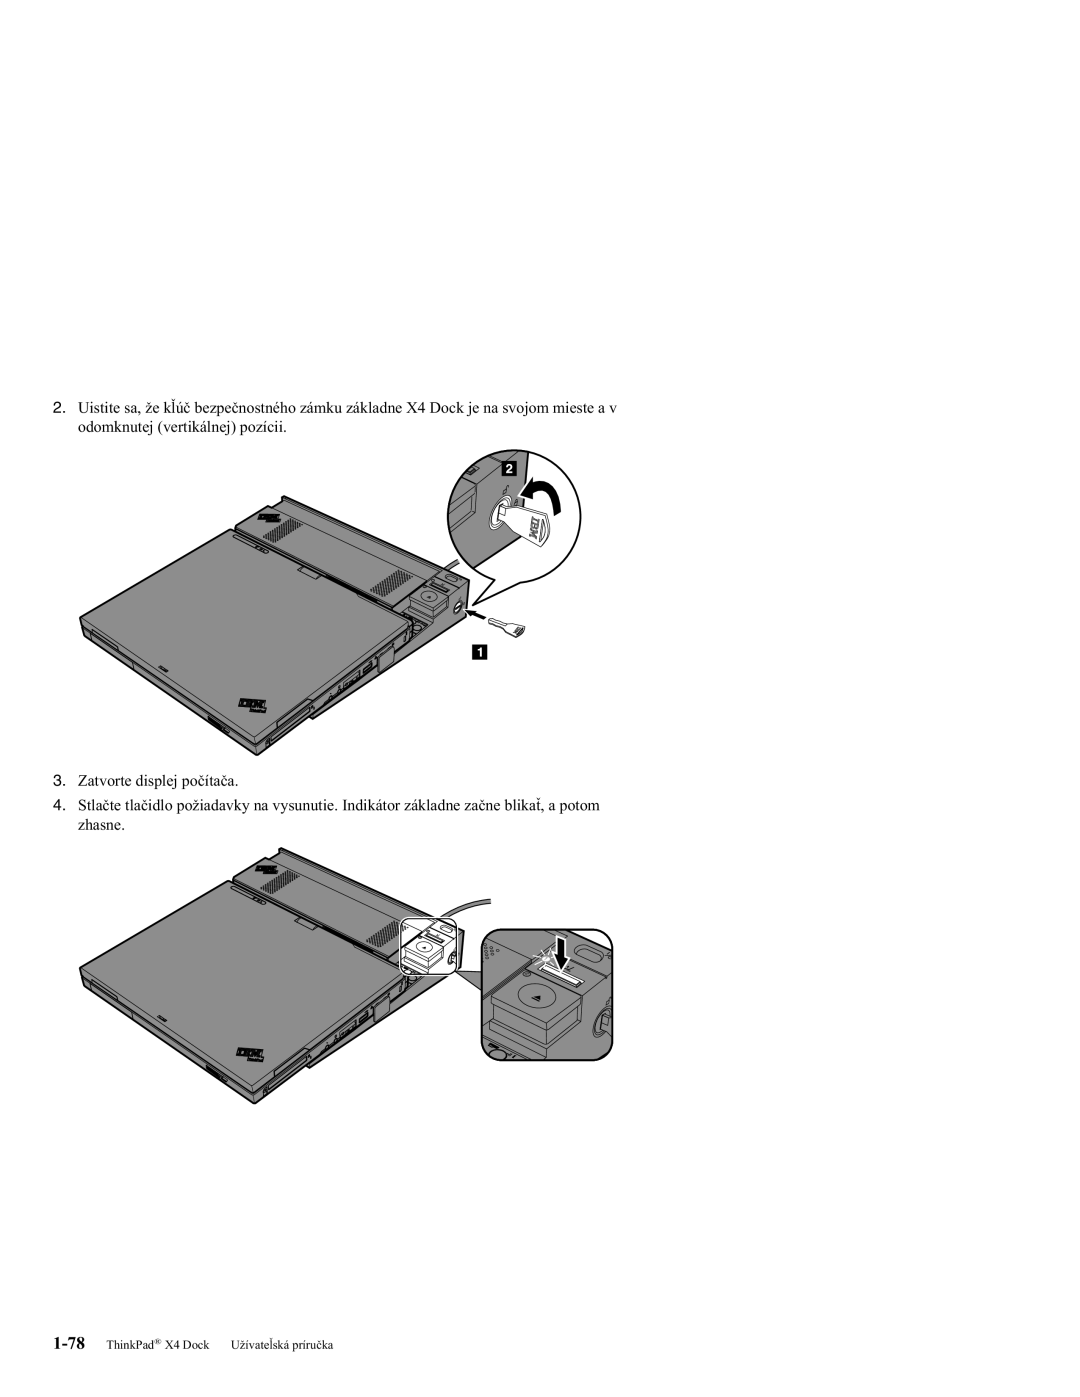 IBM manual ThinkPad X4 Dock Užívateľská príručka 